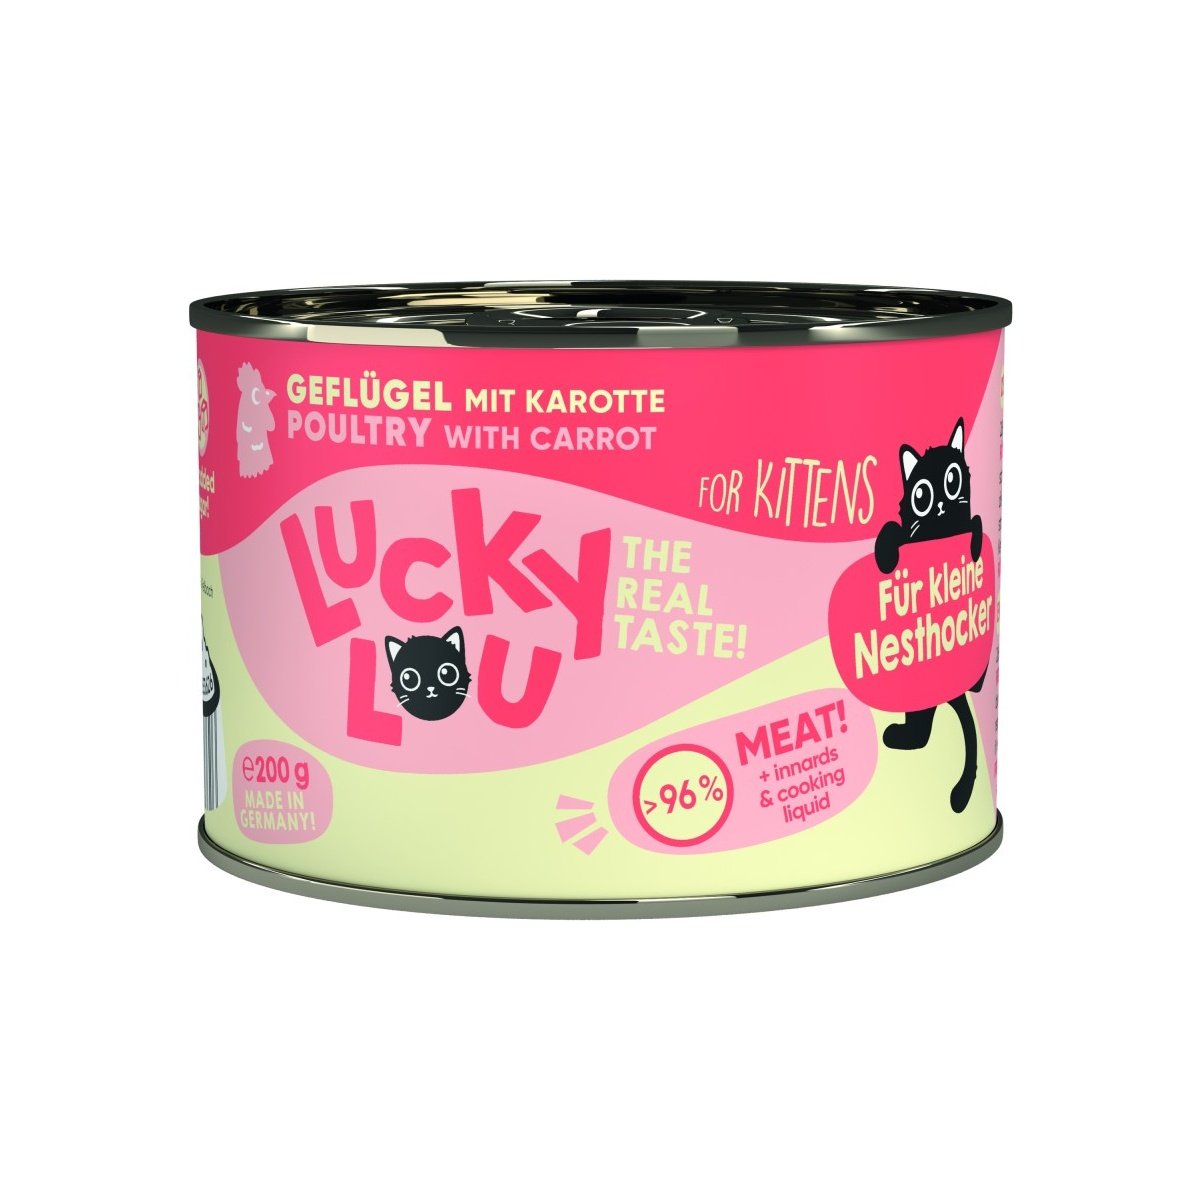 Artikel mit dem Namen Lucky Lou Lifestage Kitten Geflügel im Shop von zoo.de , dem Onlineshop für nachhaltiges Hundefutter und Katzenfutter.